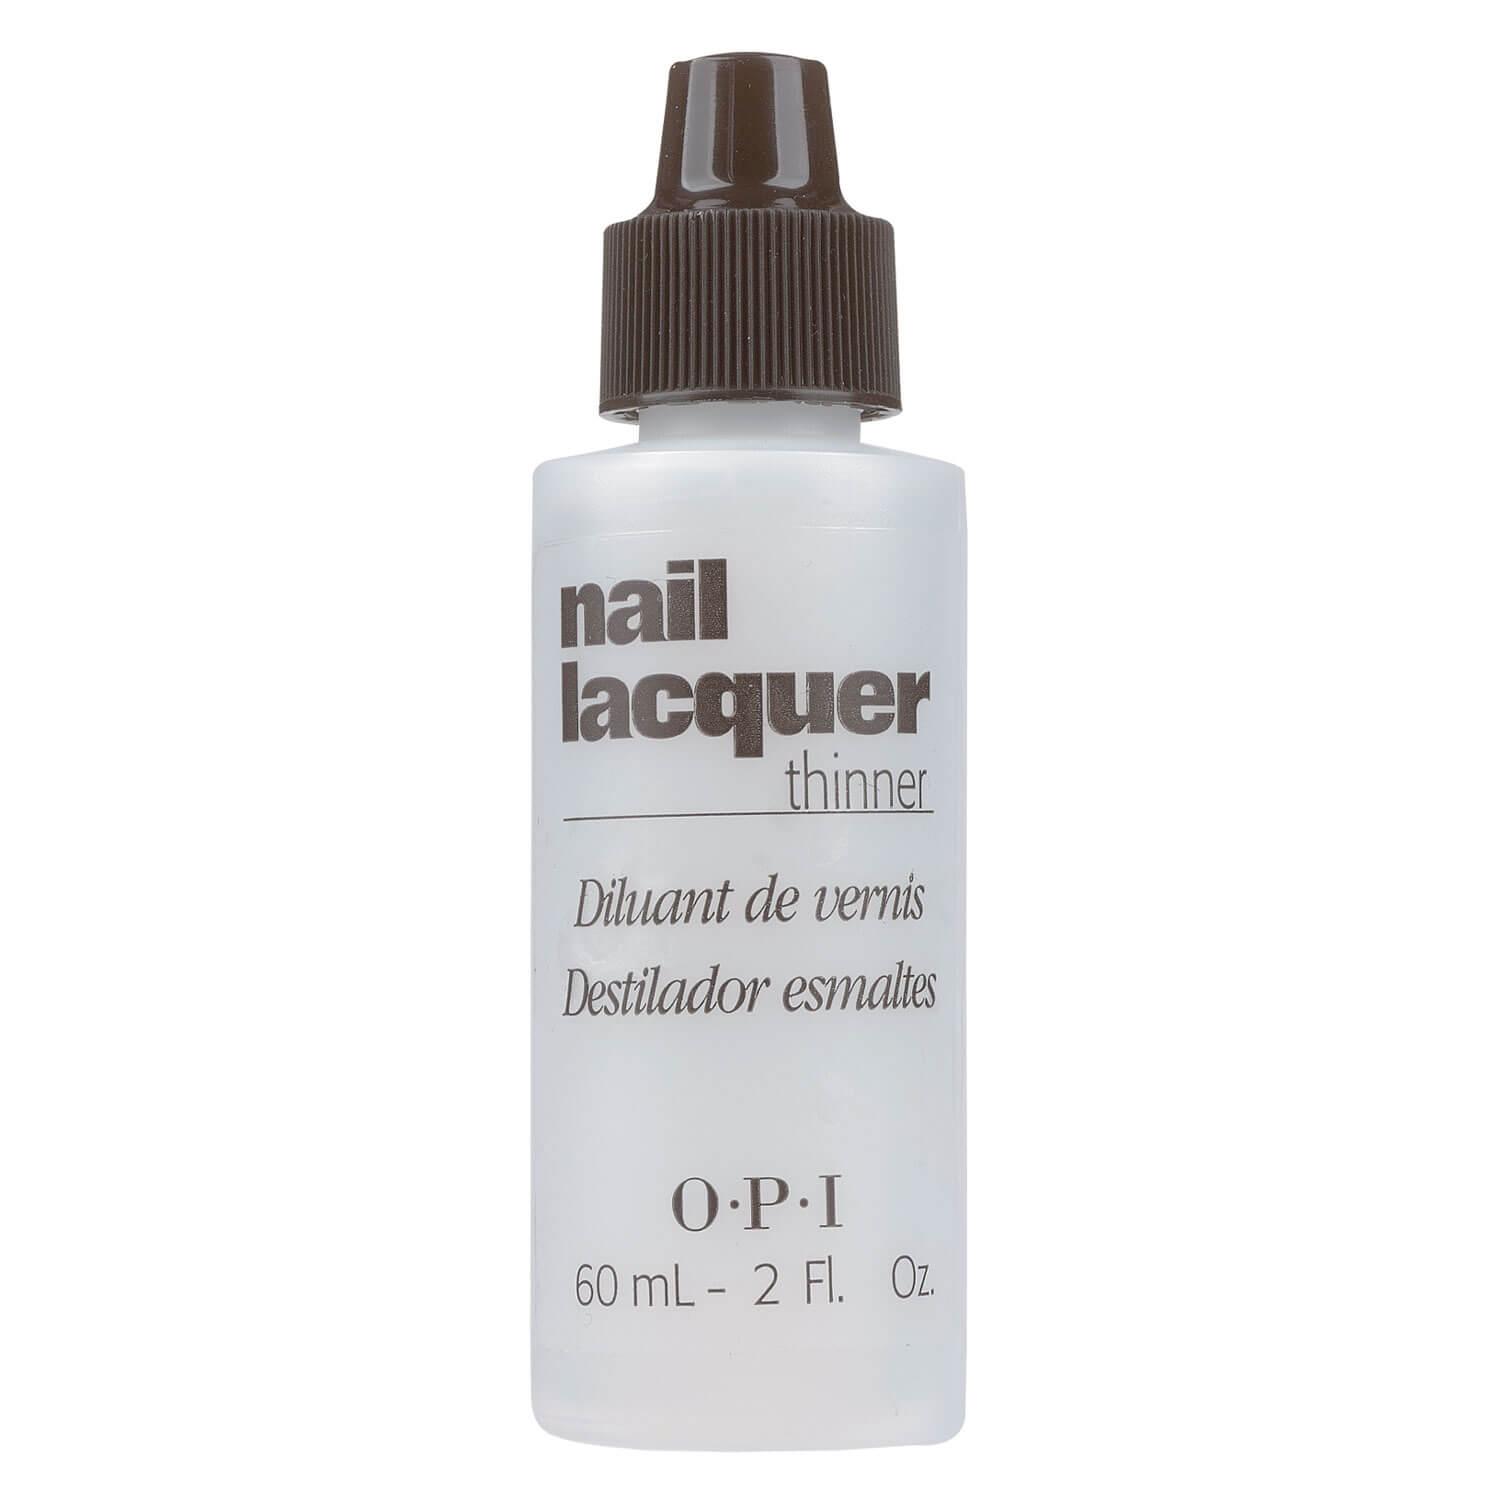 Nagellackverdünner - Nail lacquer thinner